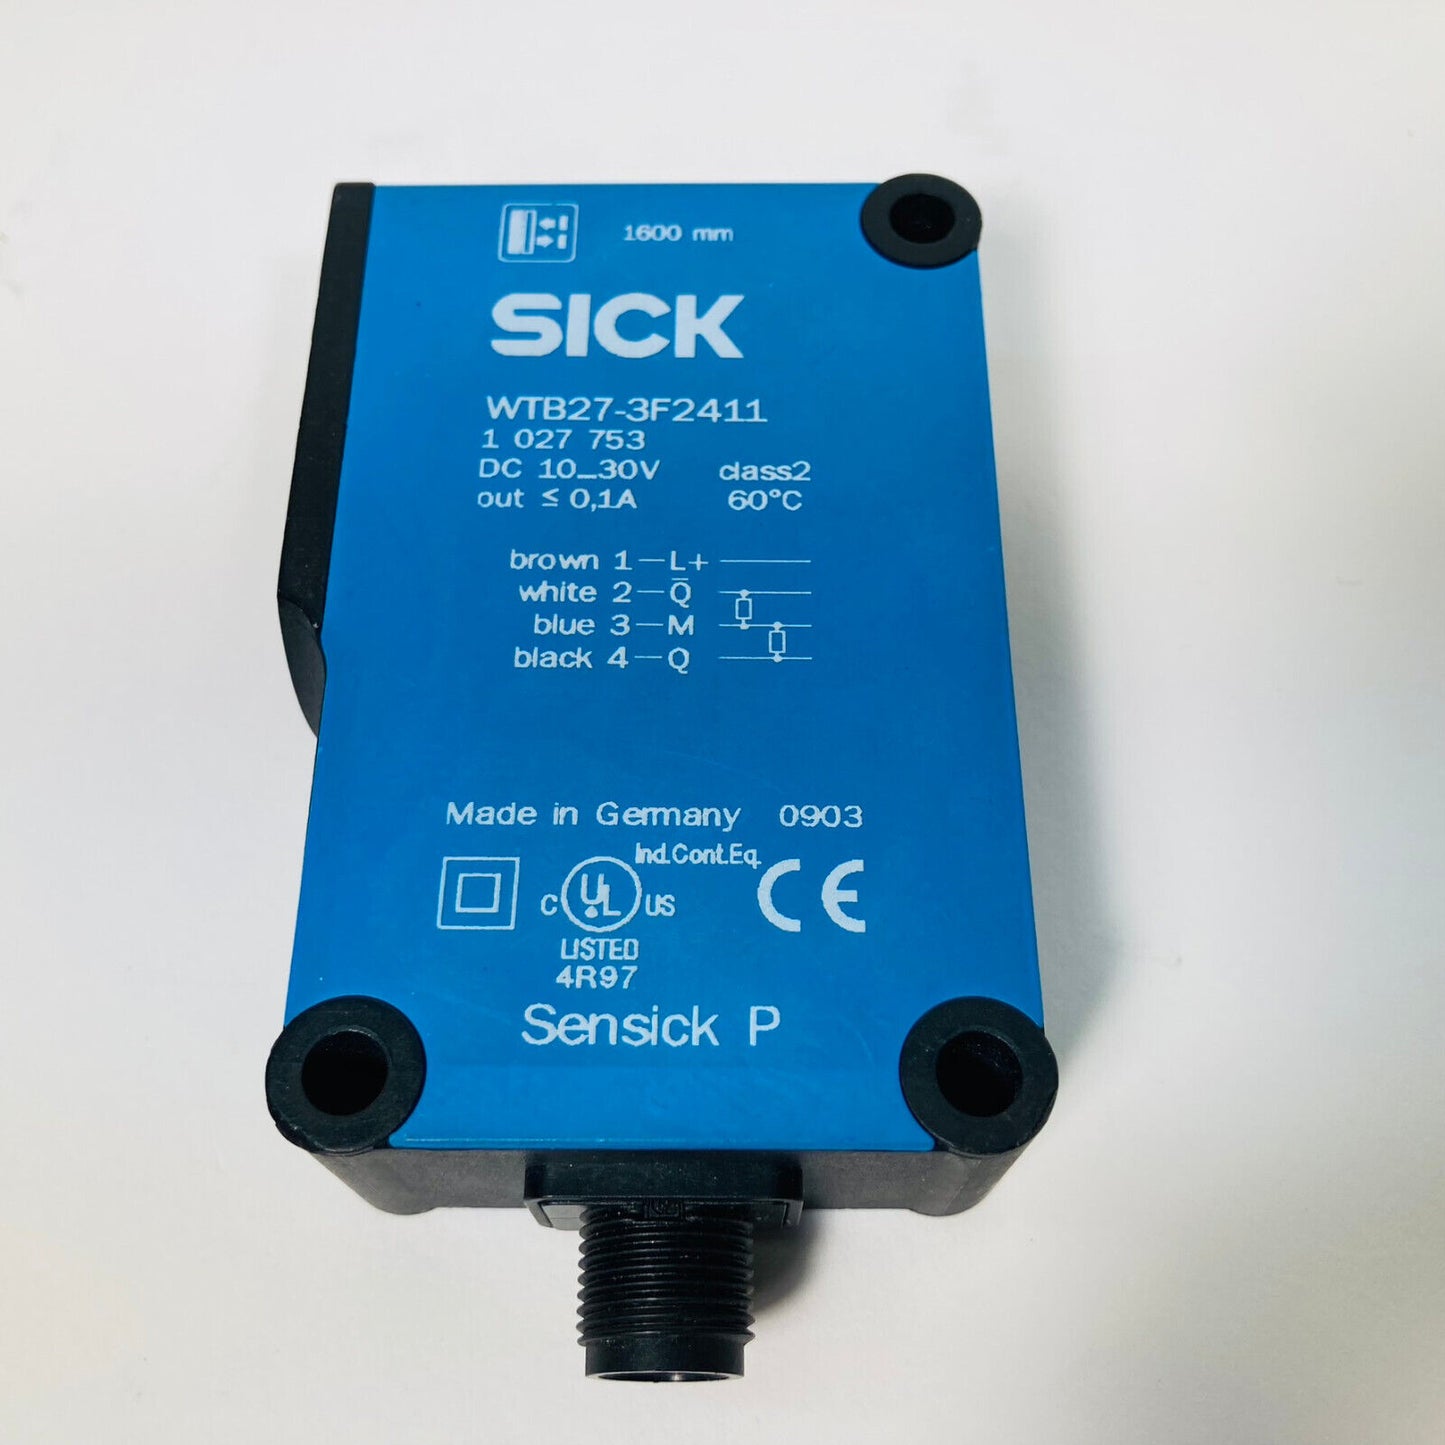 NEW Sick WTB27-3F2411 Proximity Sensor 1027753